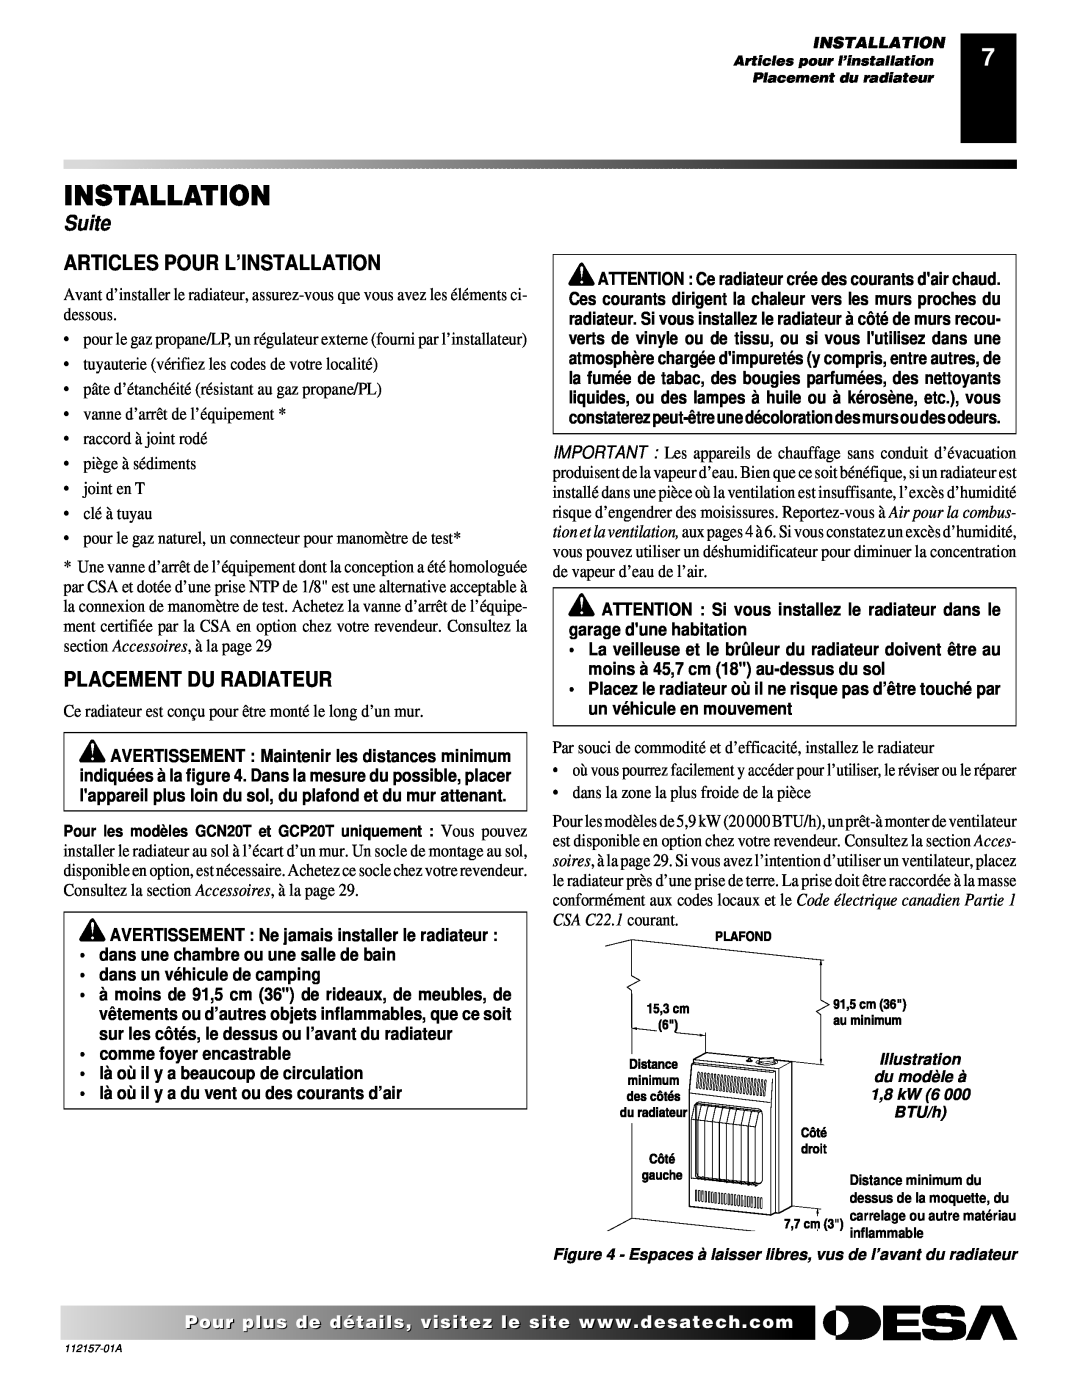 Desa GCP20T Articles Pour L’Installation, Placement Du Radiateur, Suite, AVERTISSEMENT Ne jamais installer le radiateur 